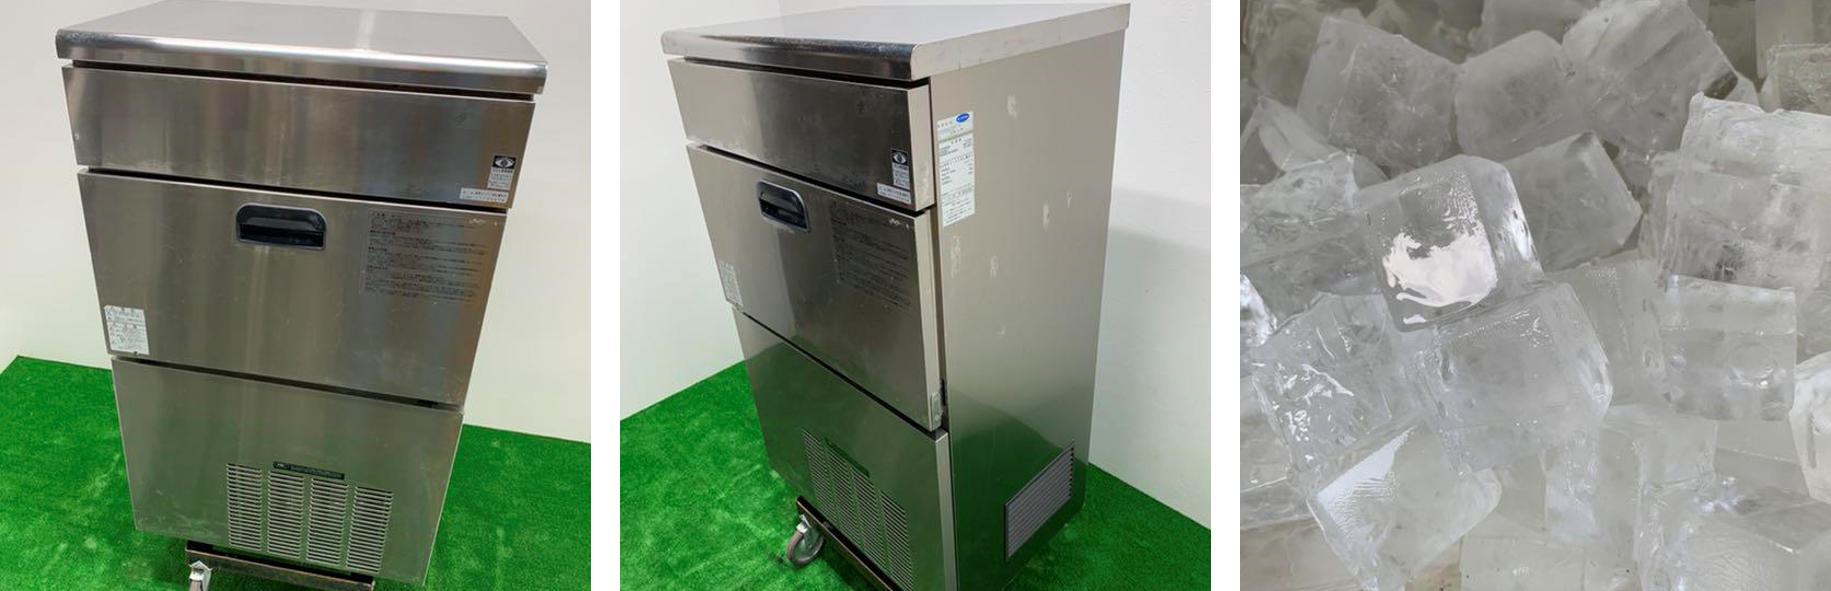 厨房機器の実績9 全自動製氷機